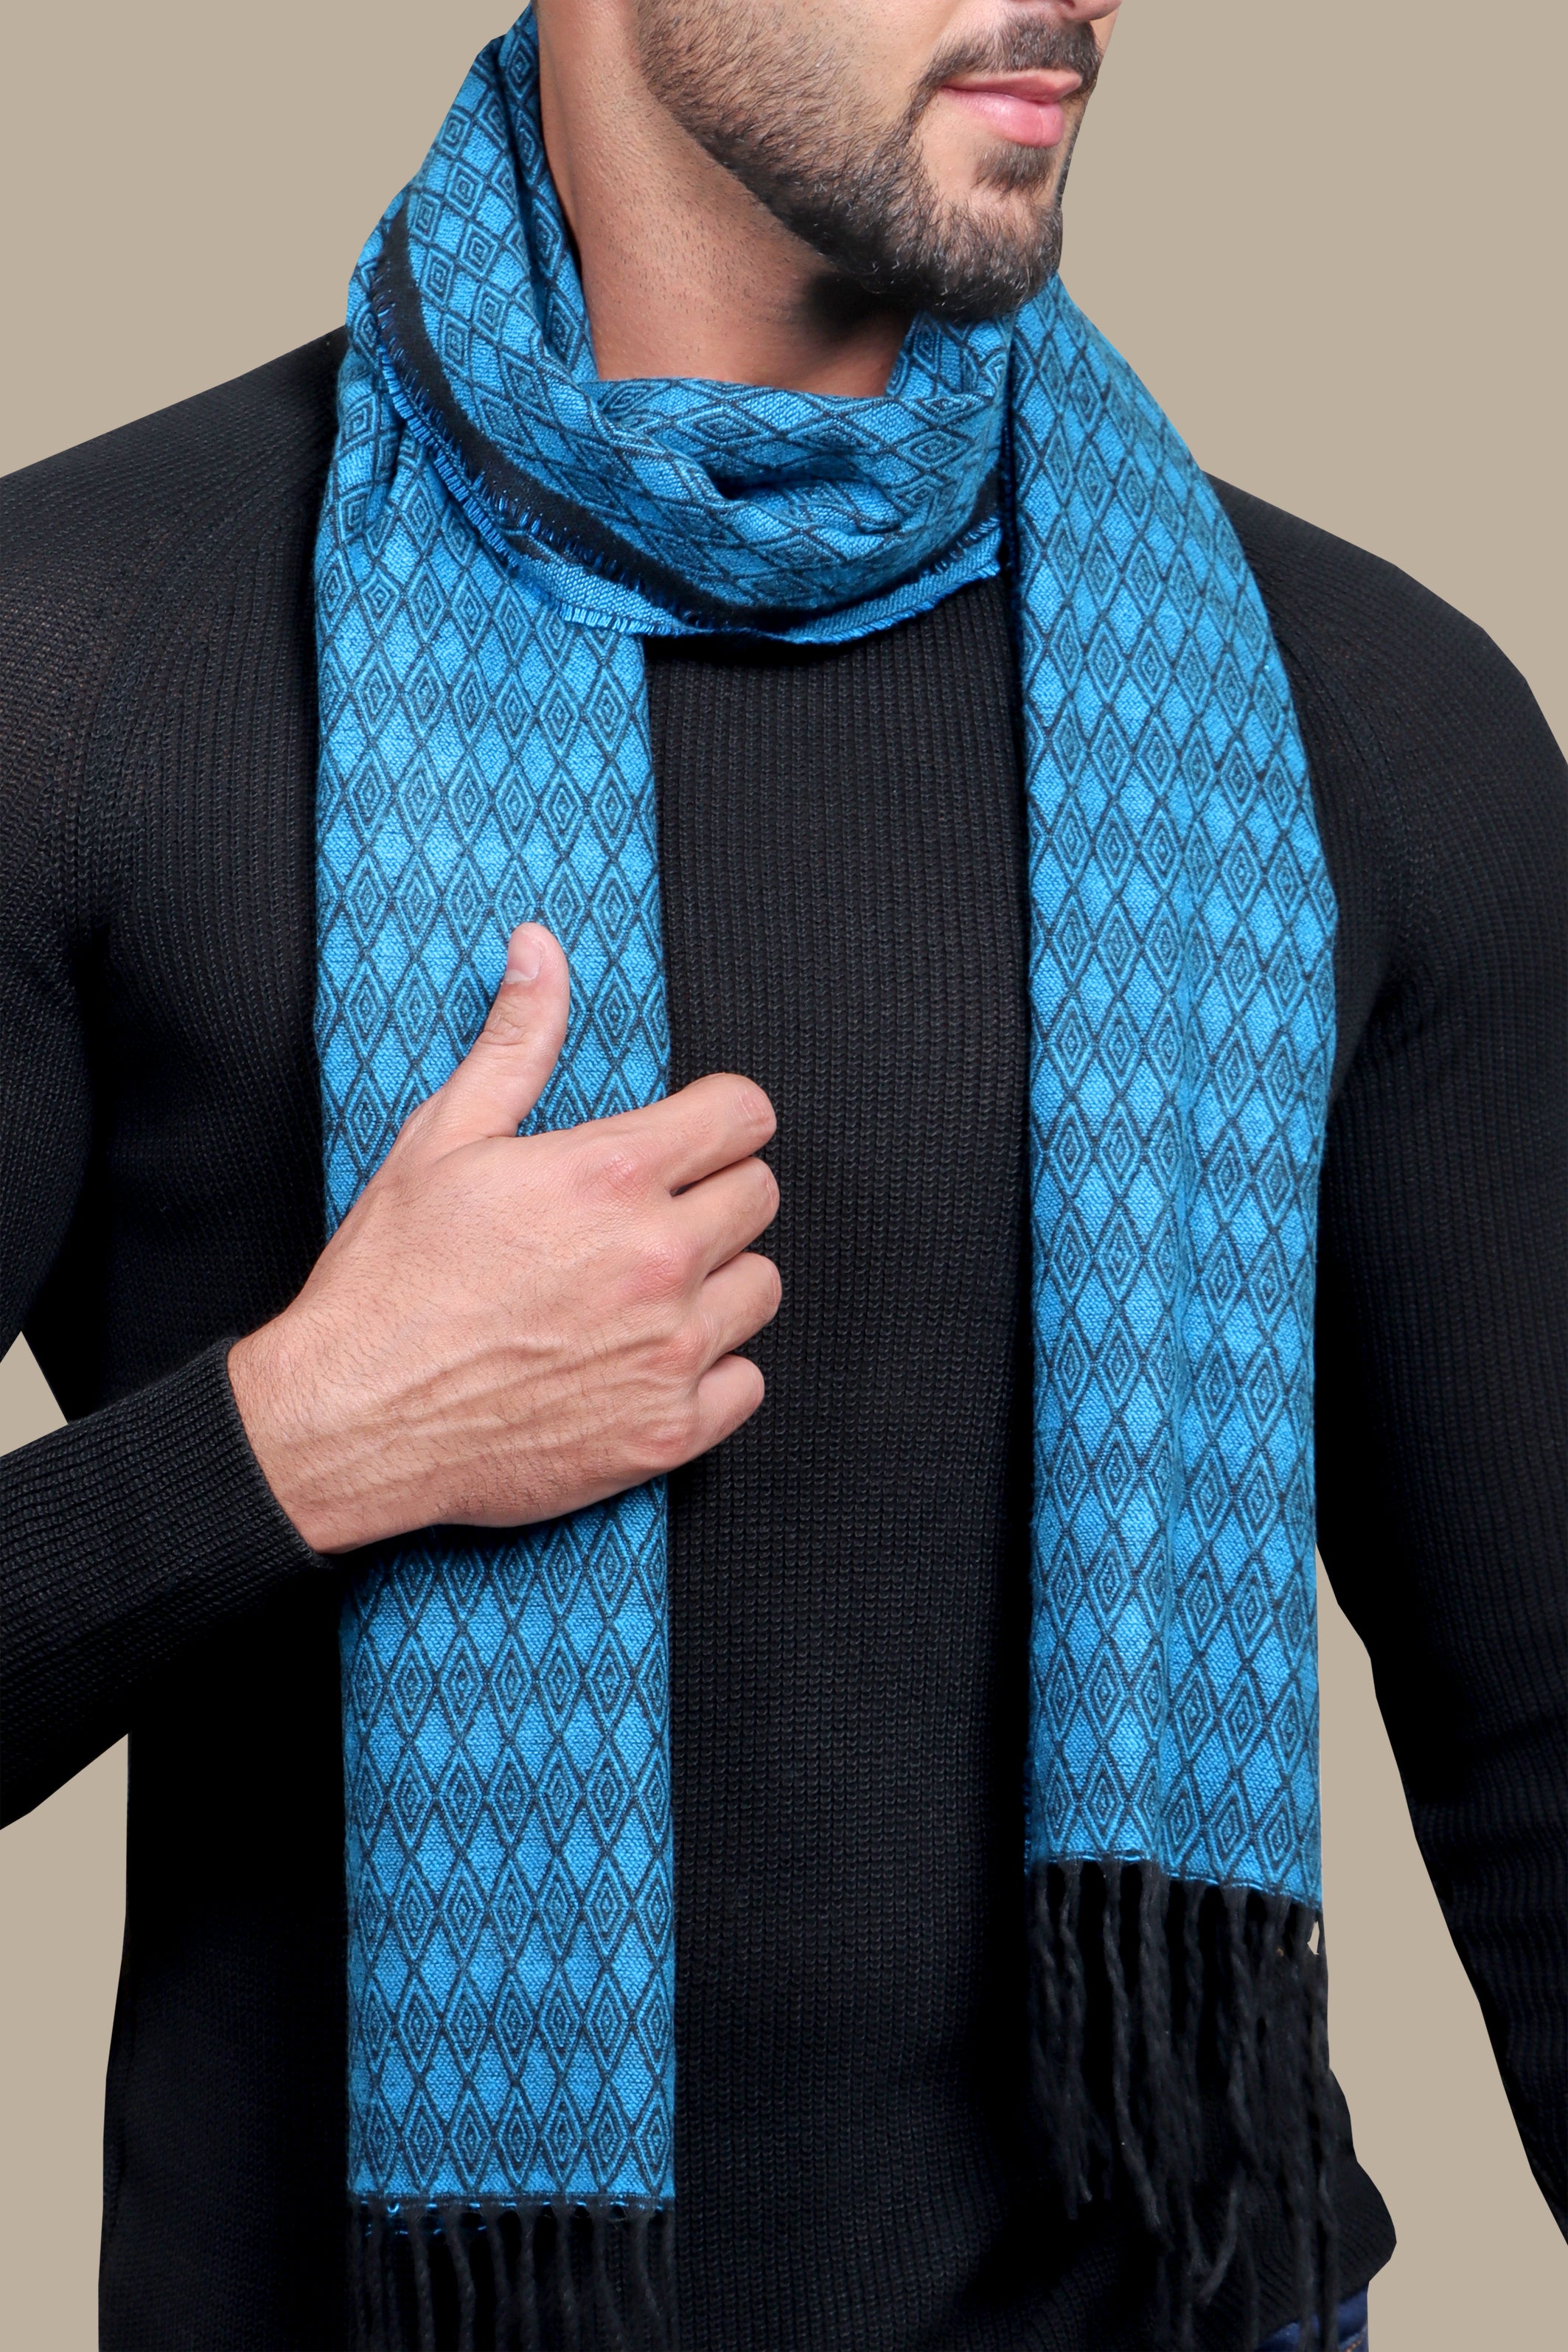 Aqua Elegance: Wool Scarf with Enchanting Damask Print